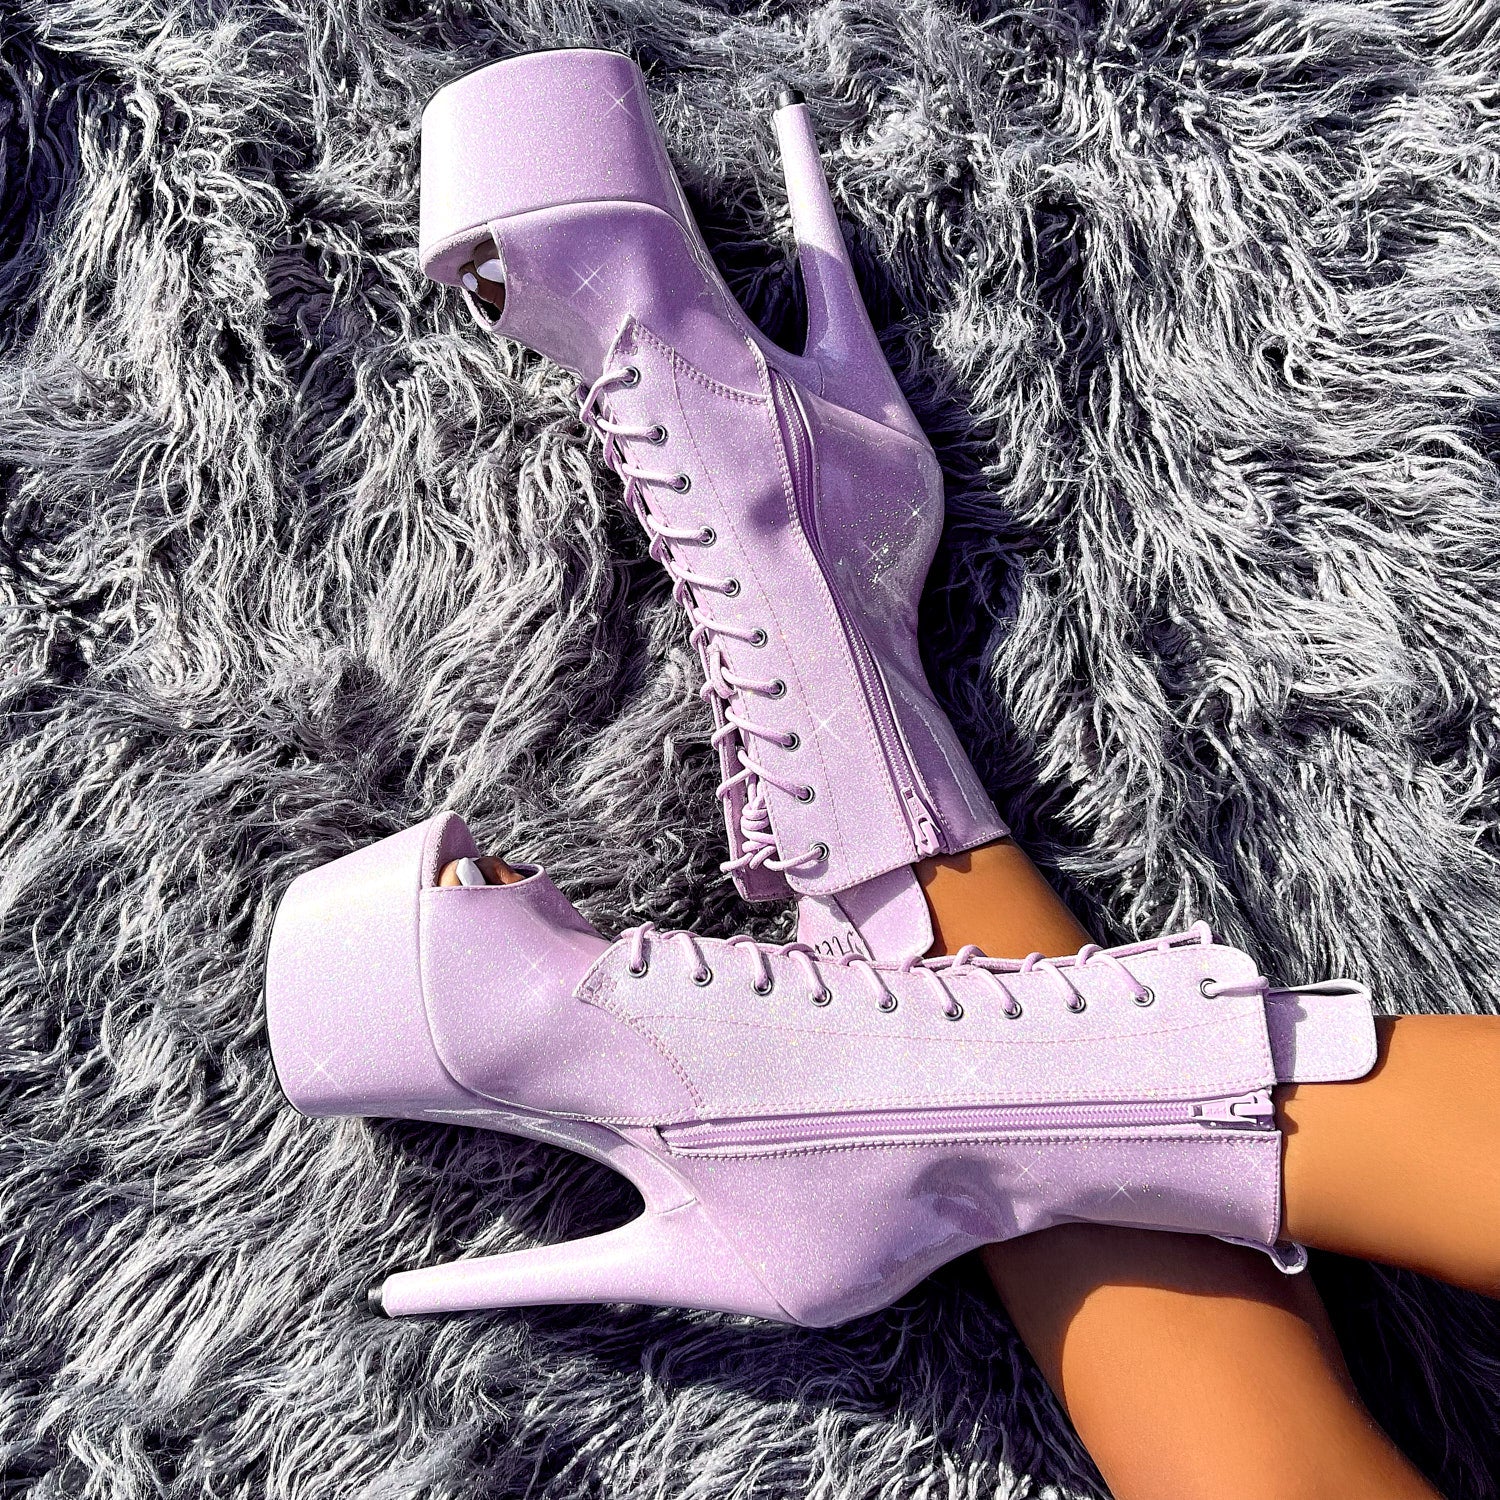 The Glitterati Open Toe Boot - Lilac Lovers - 7 INCH, stripper shoe, stripper heel, pole heel, not a pleaser, platform, dancer, pole dance, floor work